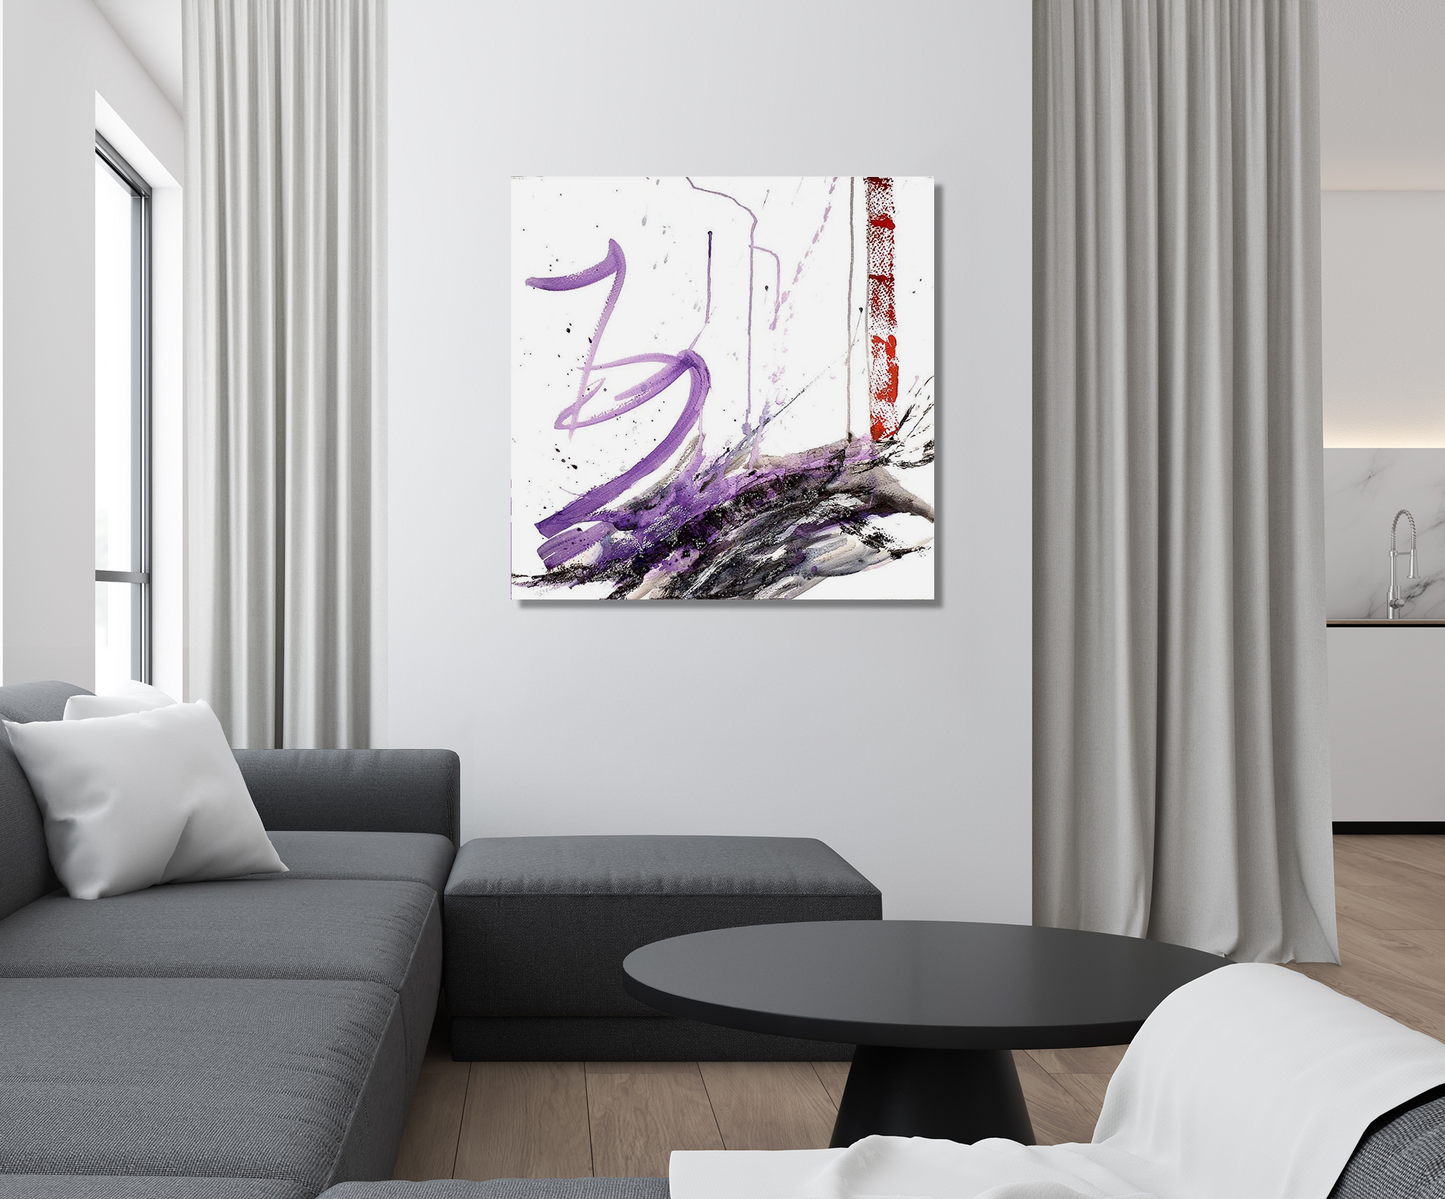 Purple and Black III Artist Enhanced Canvas Print